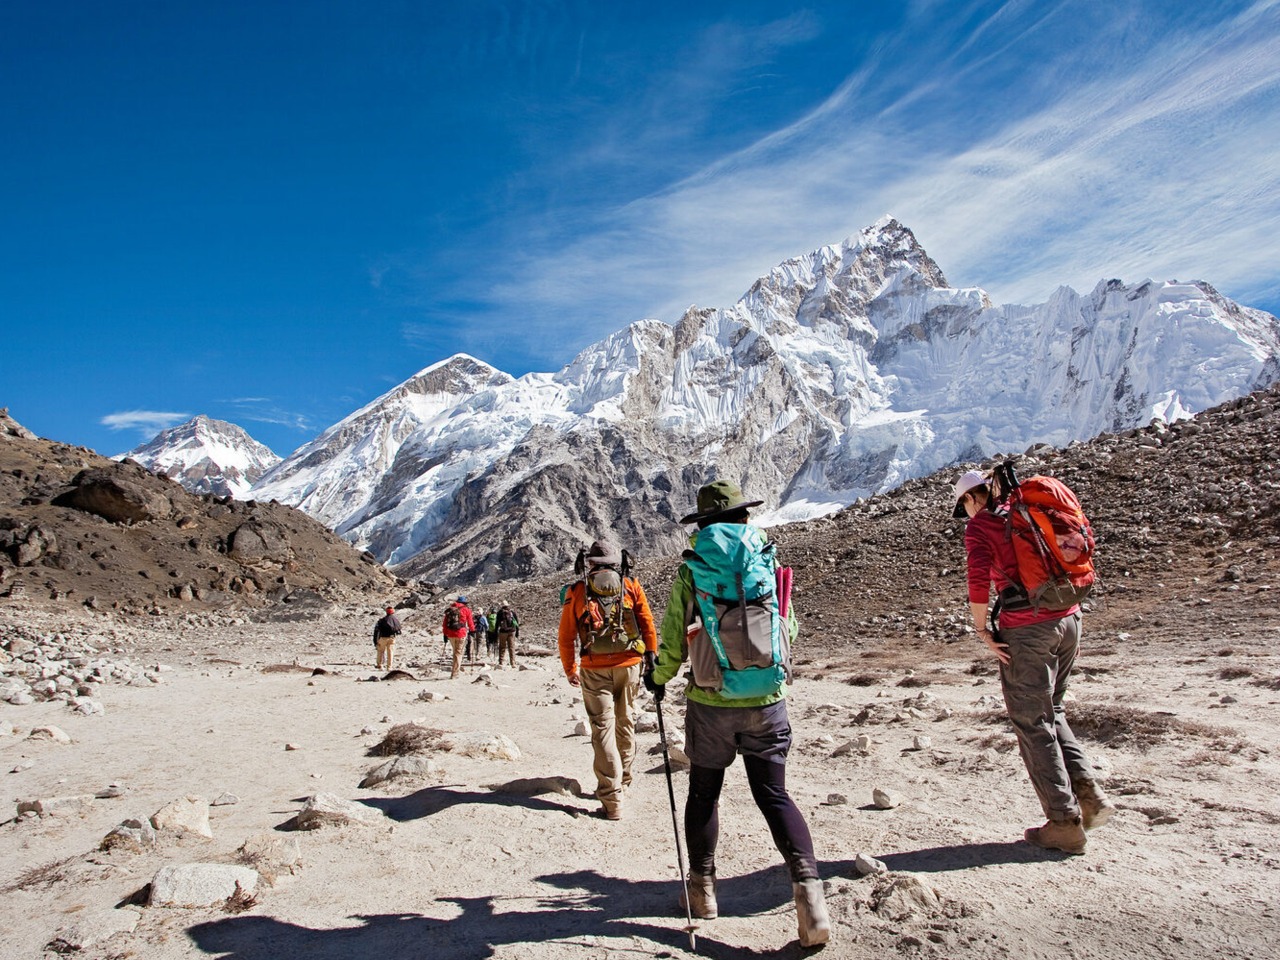 Треккинг к базовому лагерю Эвереста на 14 дней | Цена 1650$, отзывы, описание экскурсии